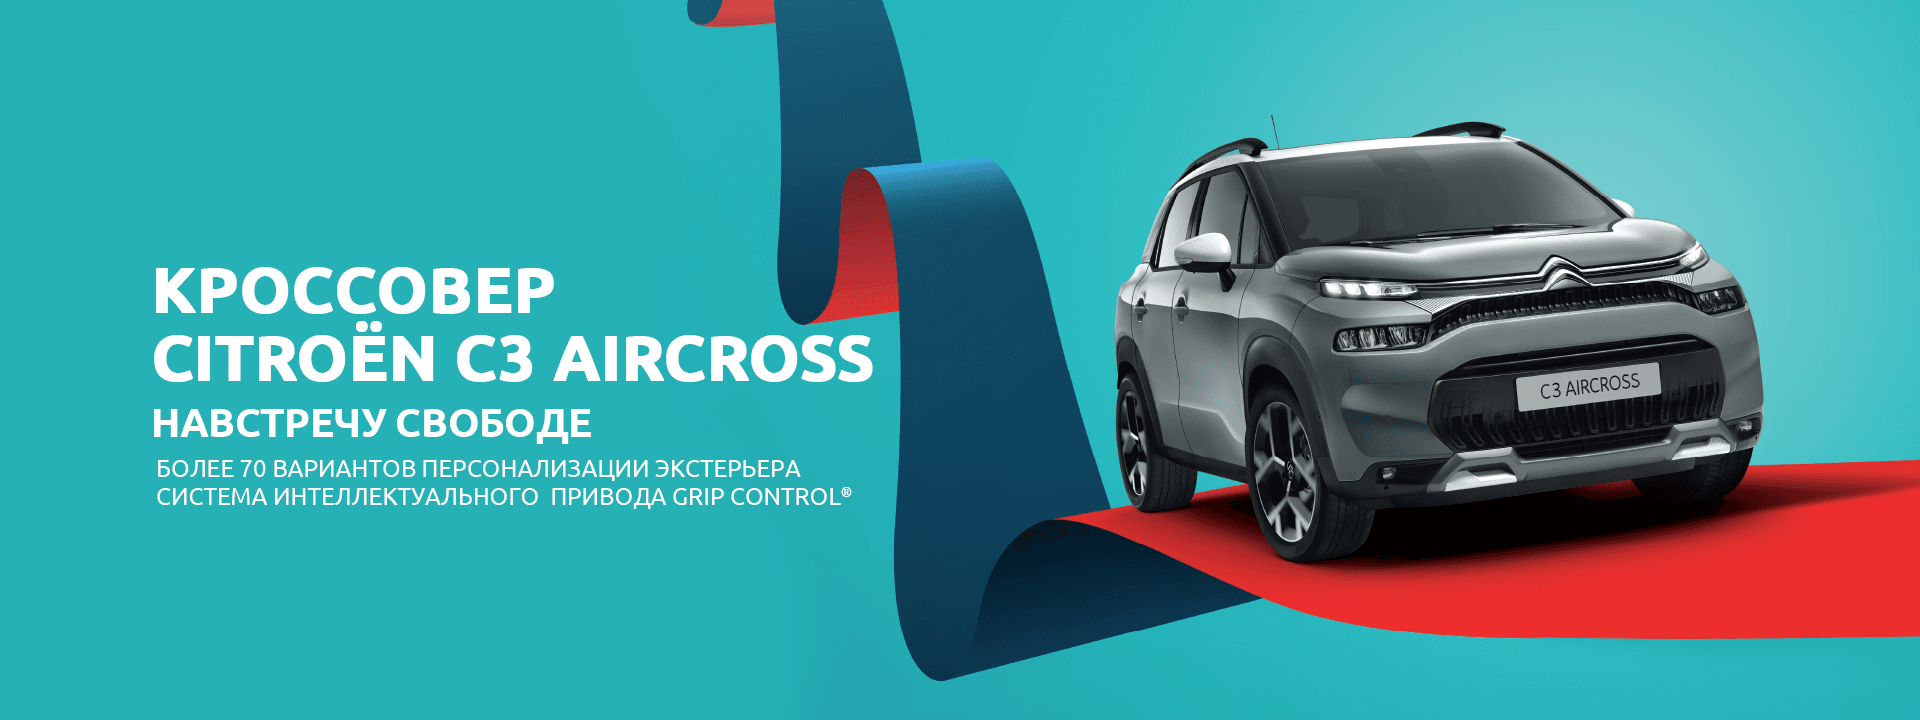 Новый автомобиль Citroën C3 AIRCROSS